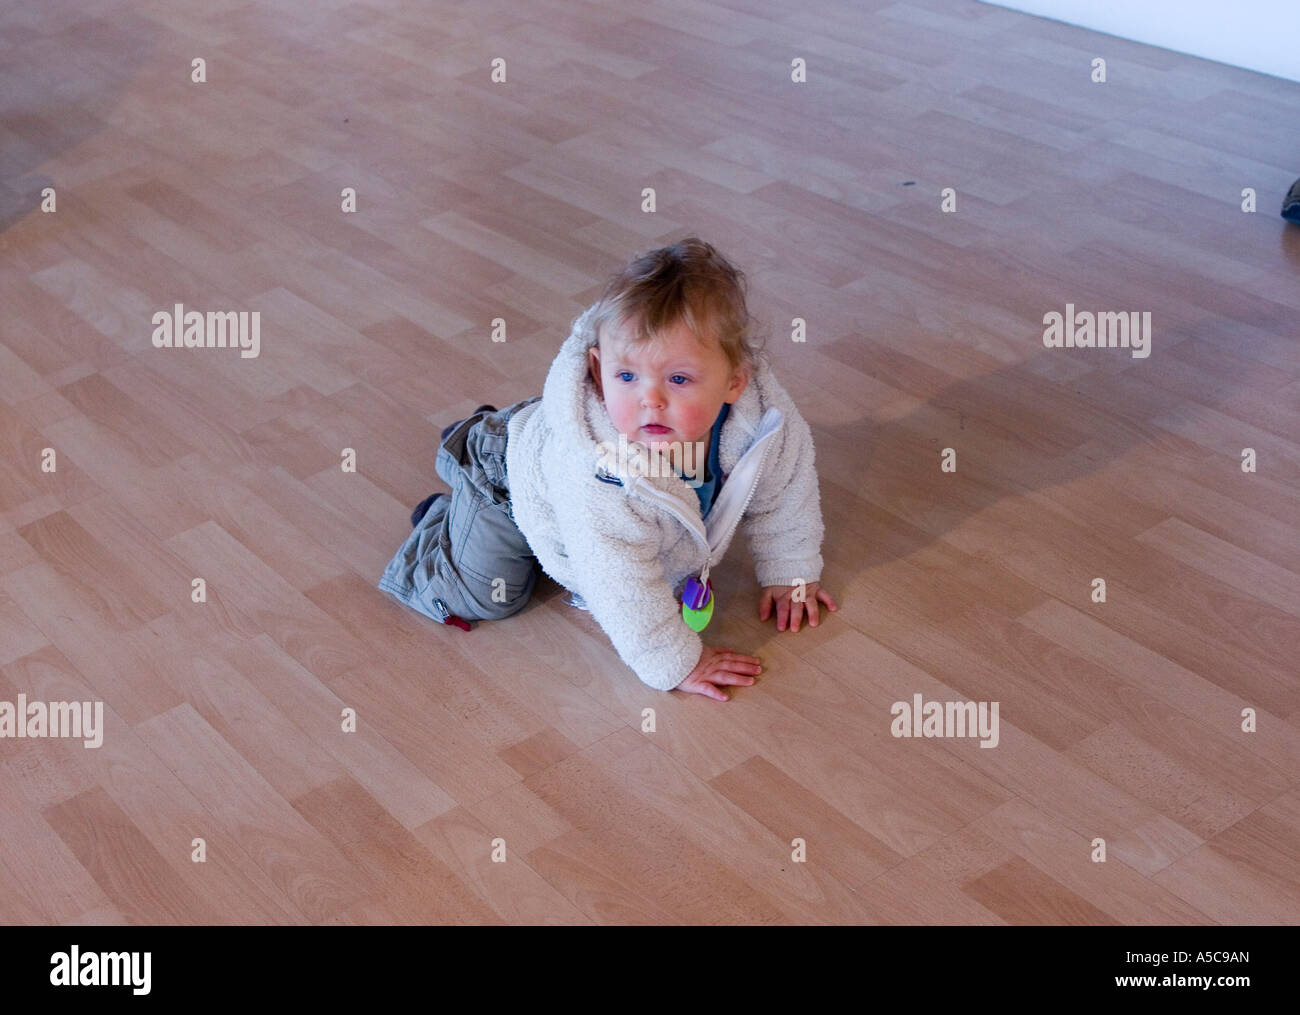 Un an bébé garçon jouant sur un plancher en bois stratifié Banque D'Images